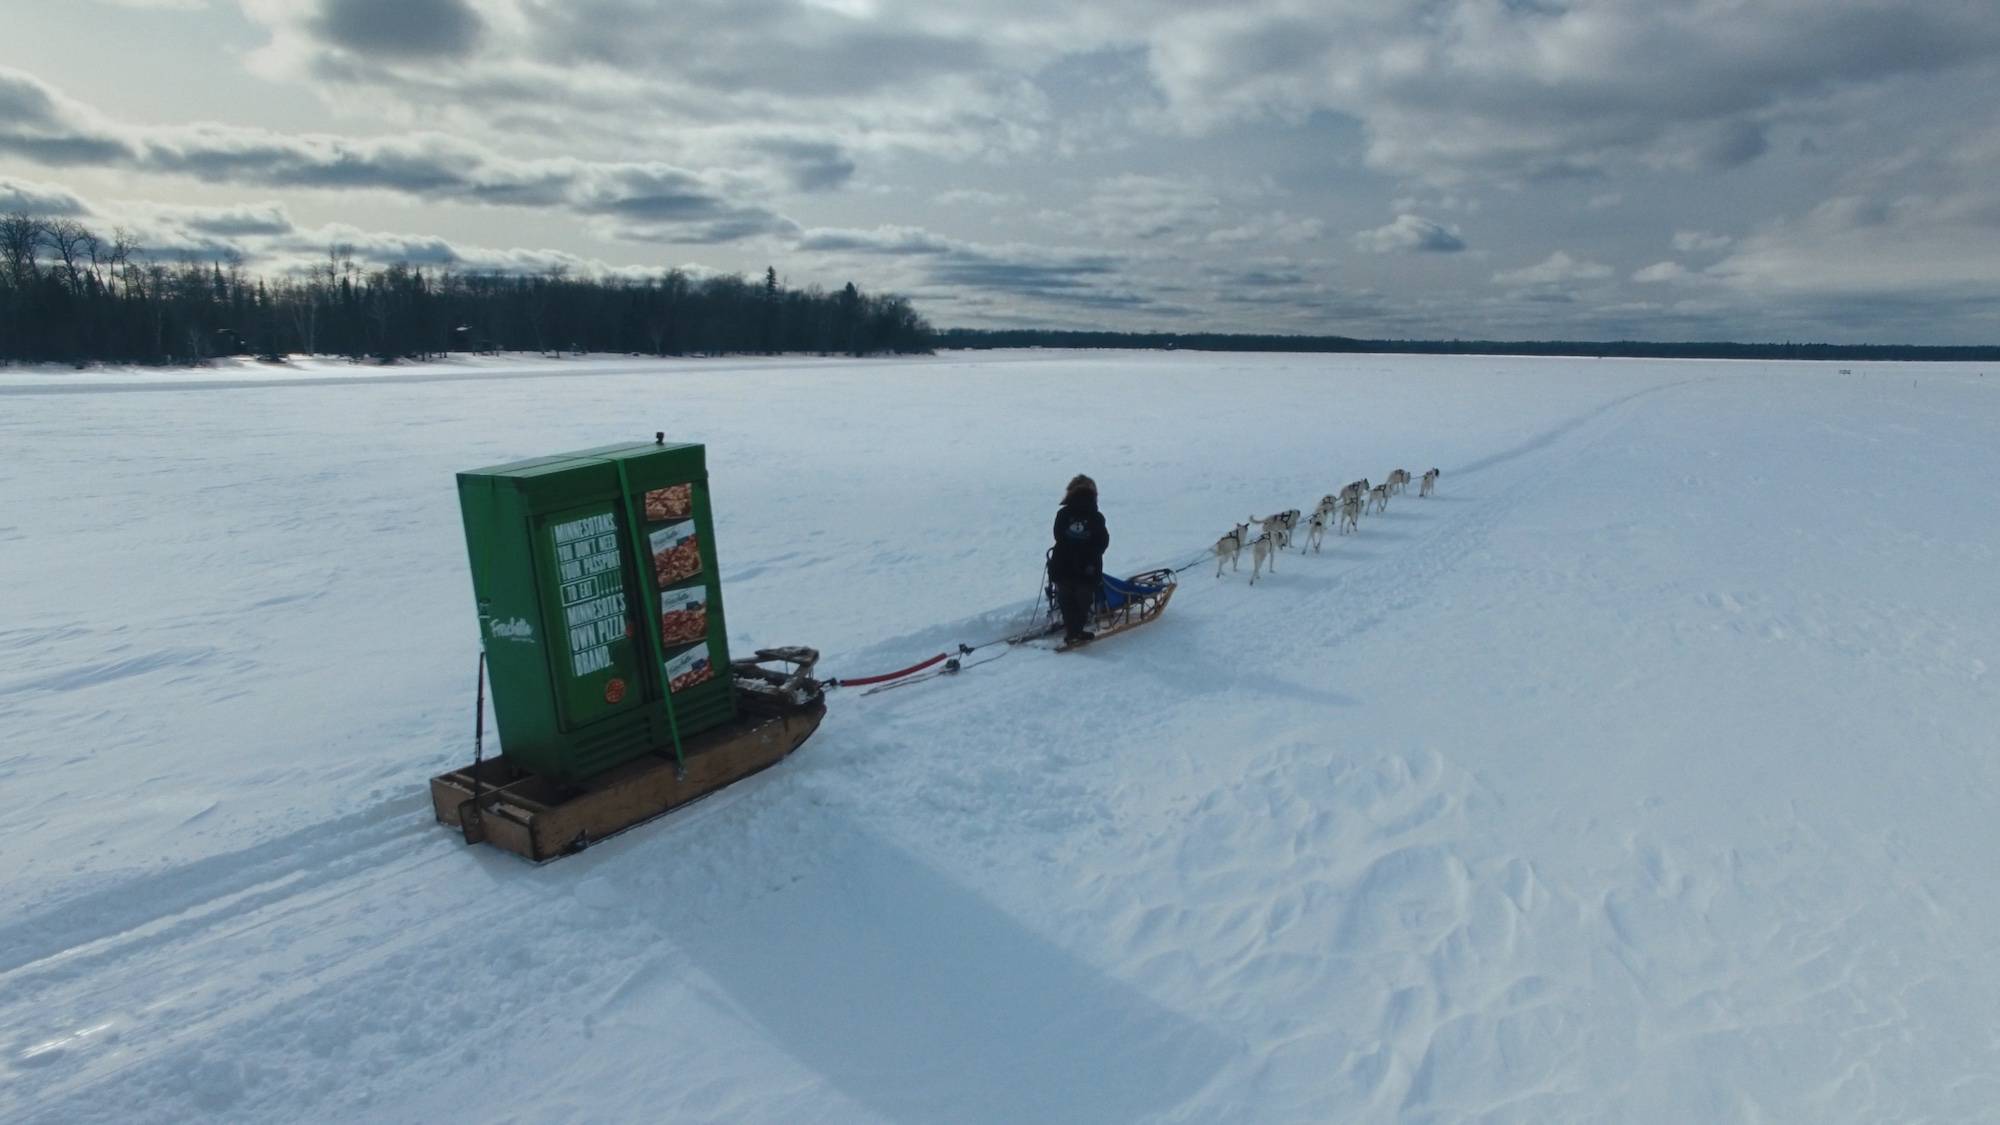 A dog sled pulls a giant freschetta pizza freezer over a frozen lake